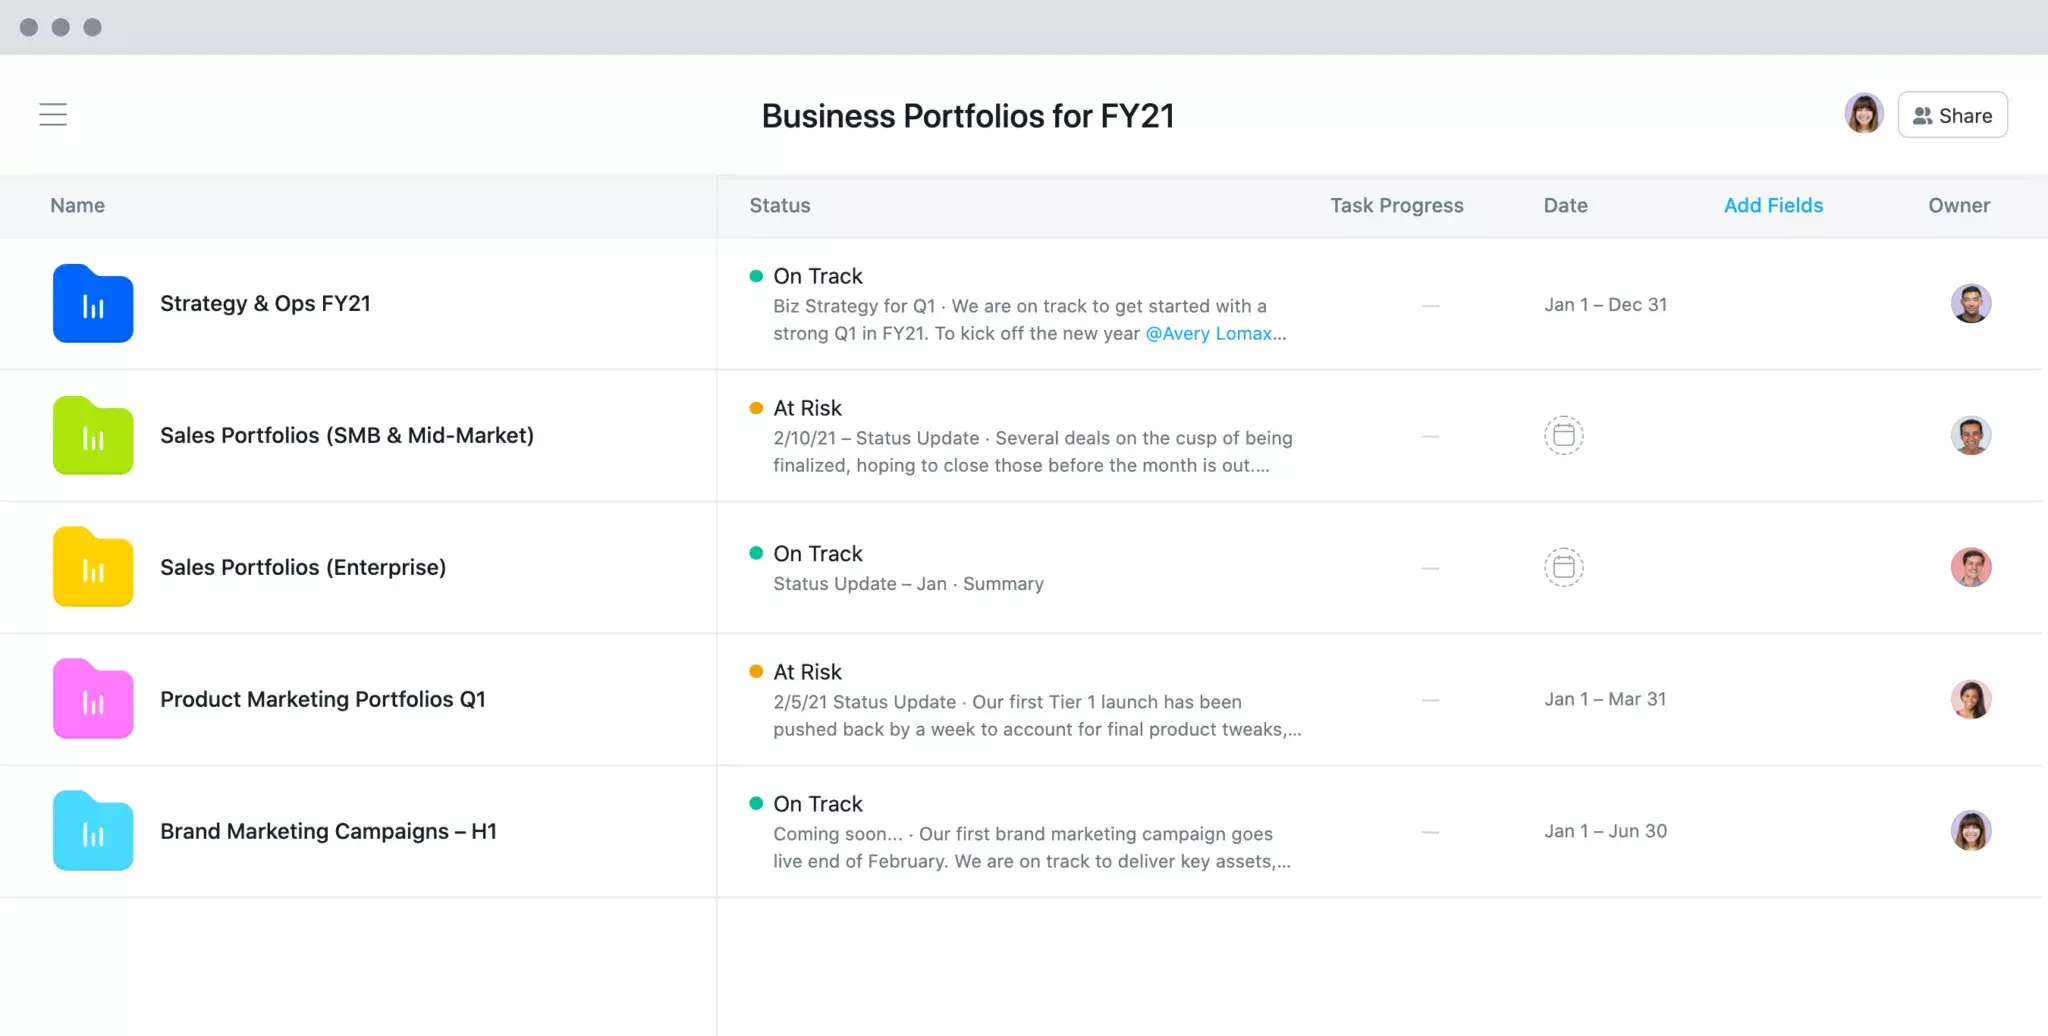 Business portfolios for FY21